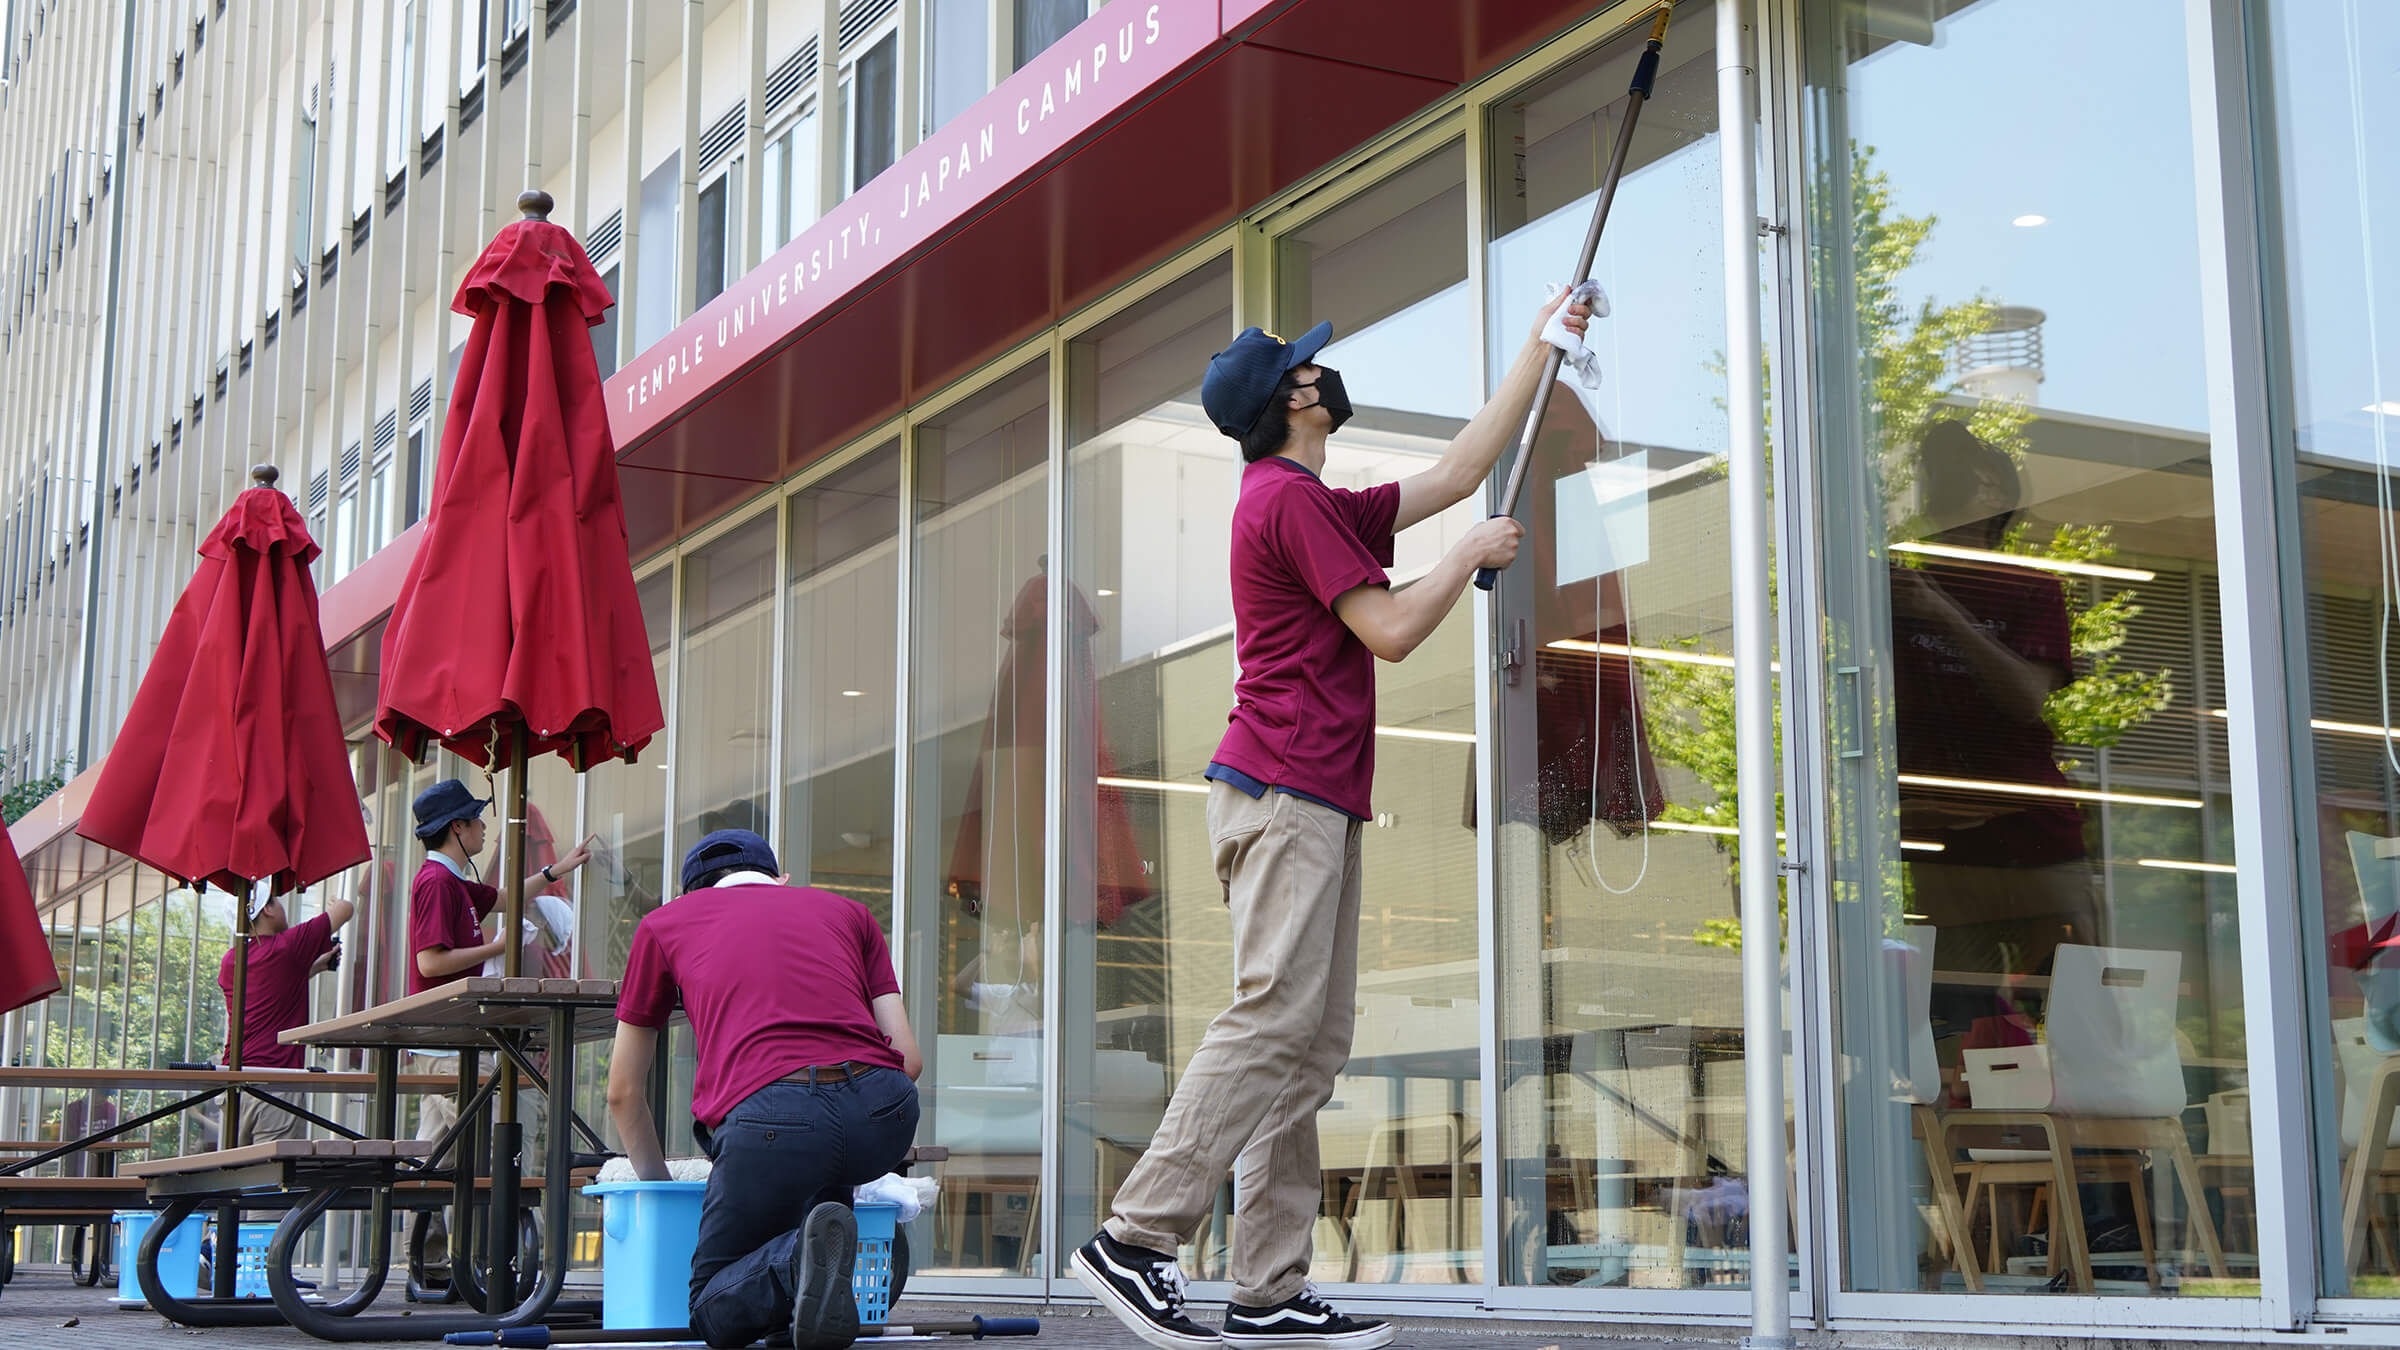 TUJを訪れ、作業学習として窓清掃の技術を習得する青鳥特別支援学校の生徒たち